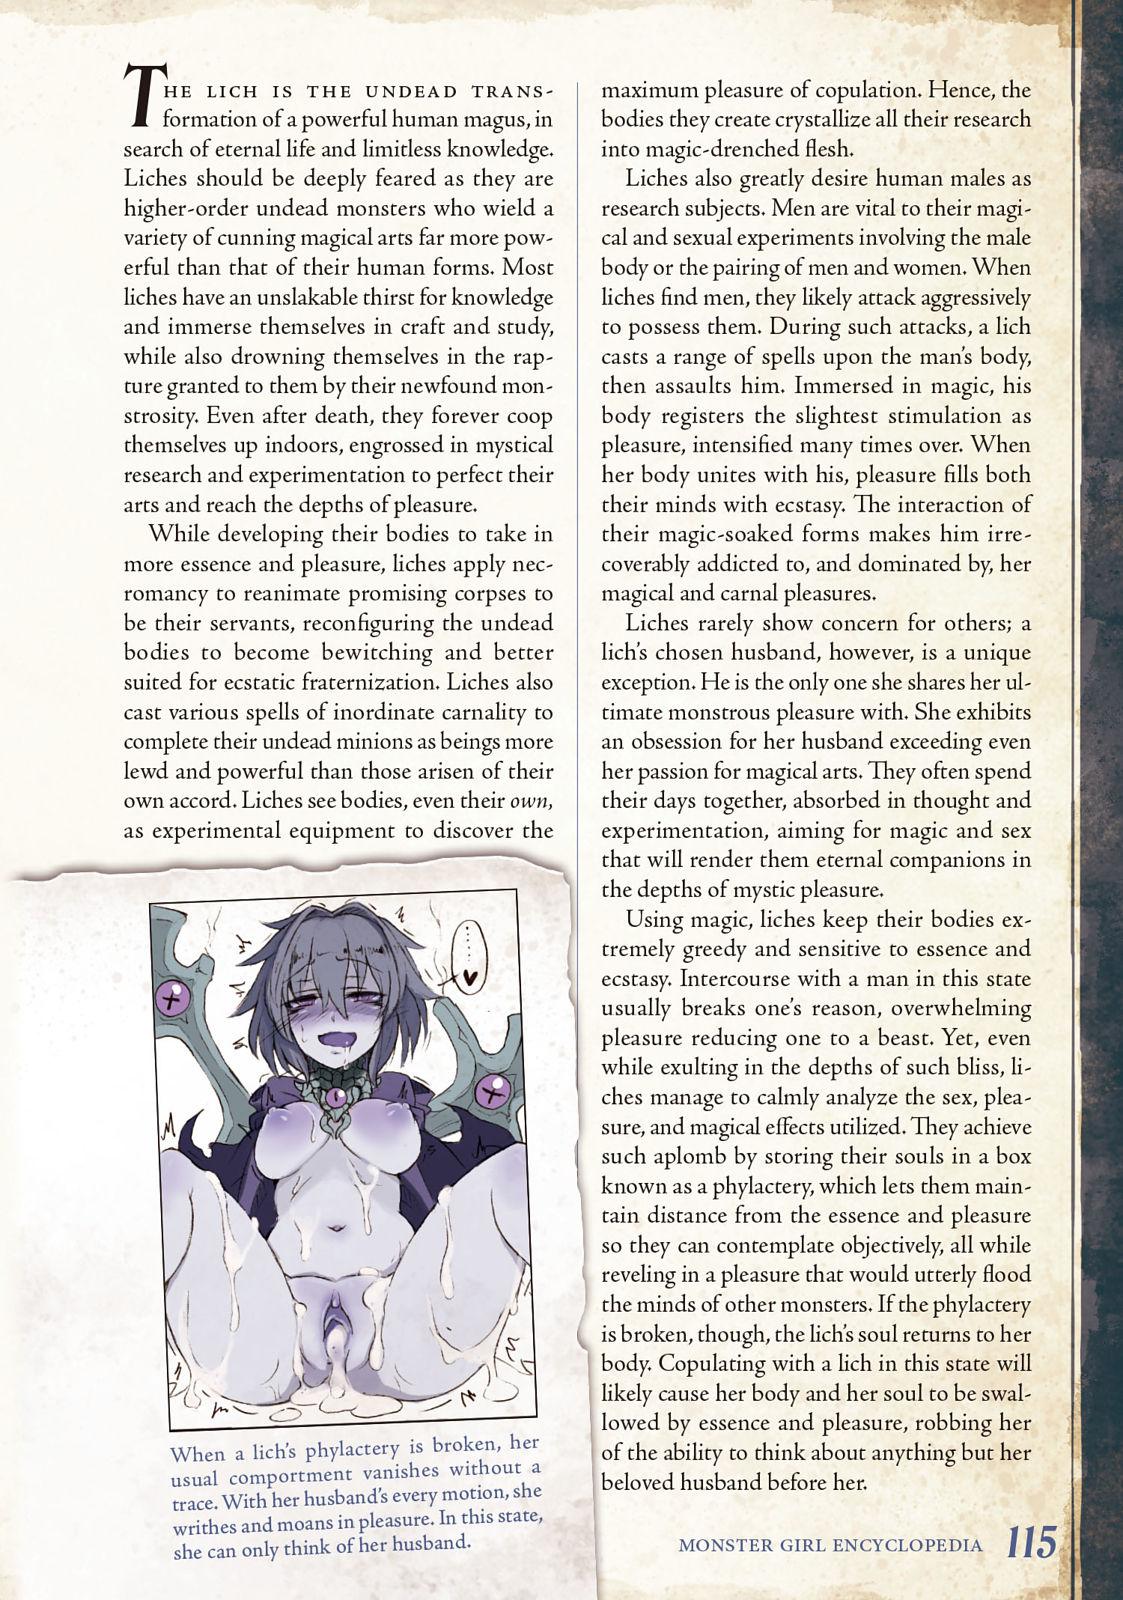 Monster Girl Encyclopedia Vol. 2 115